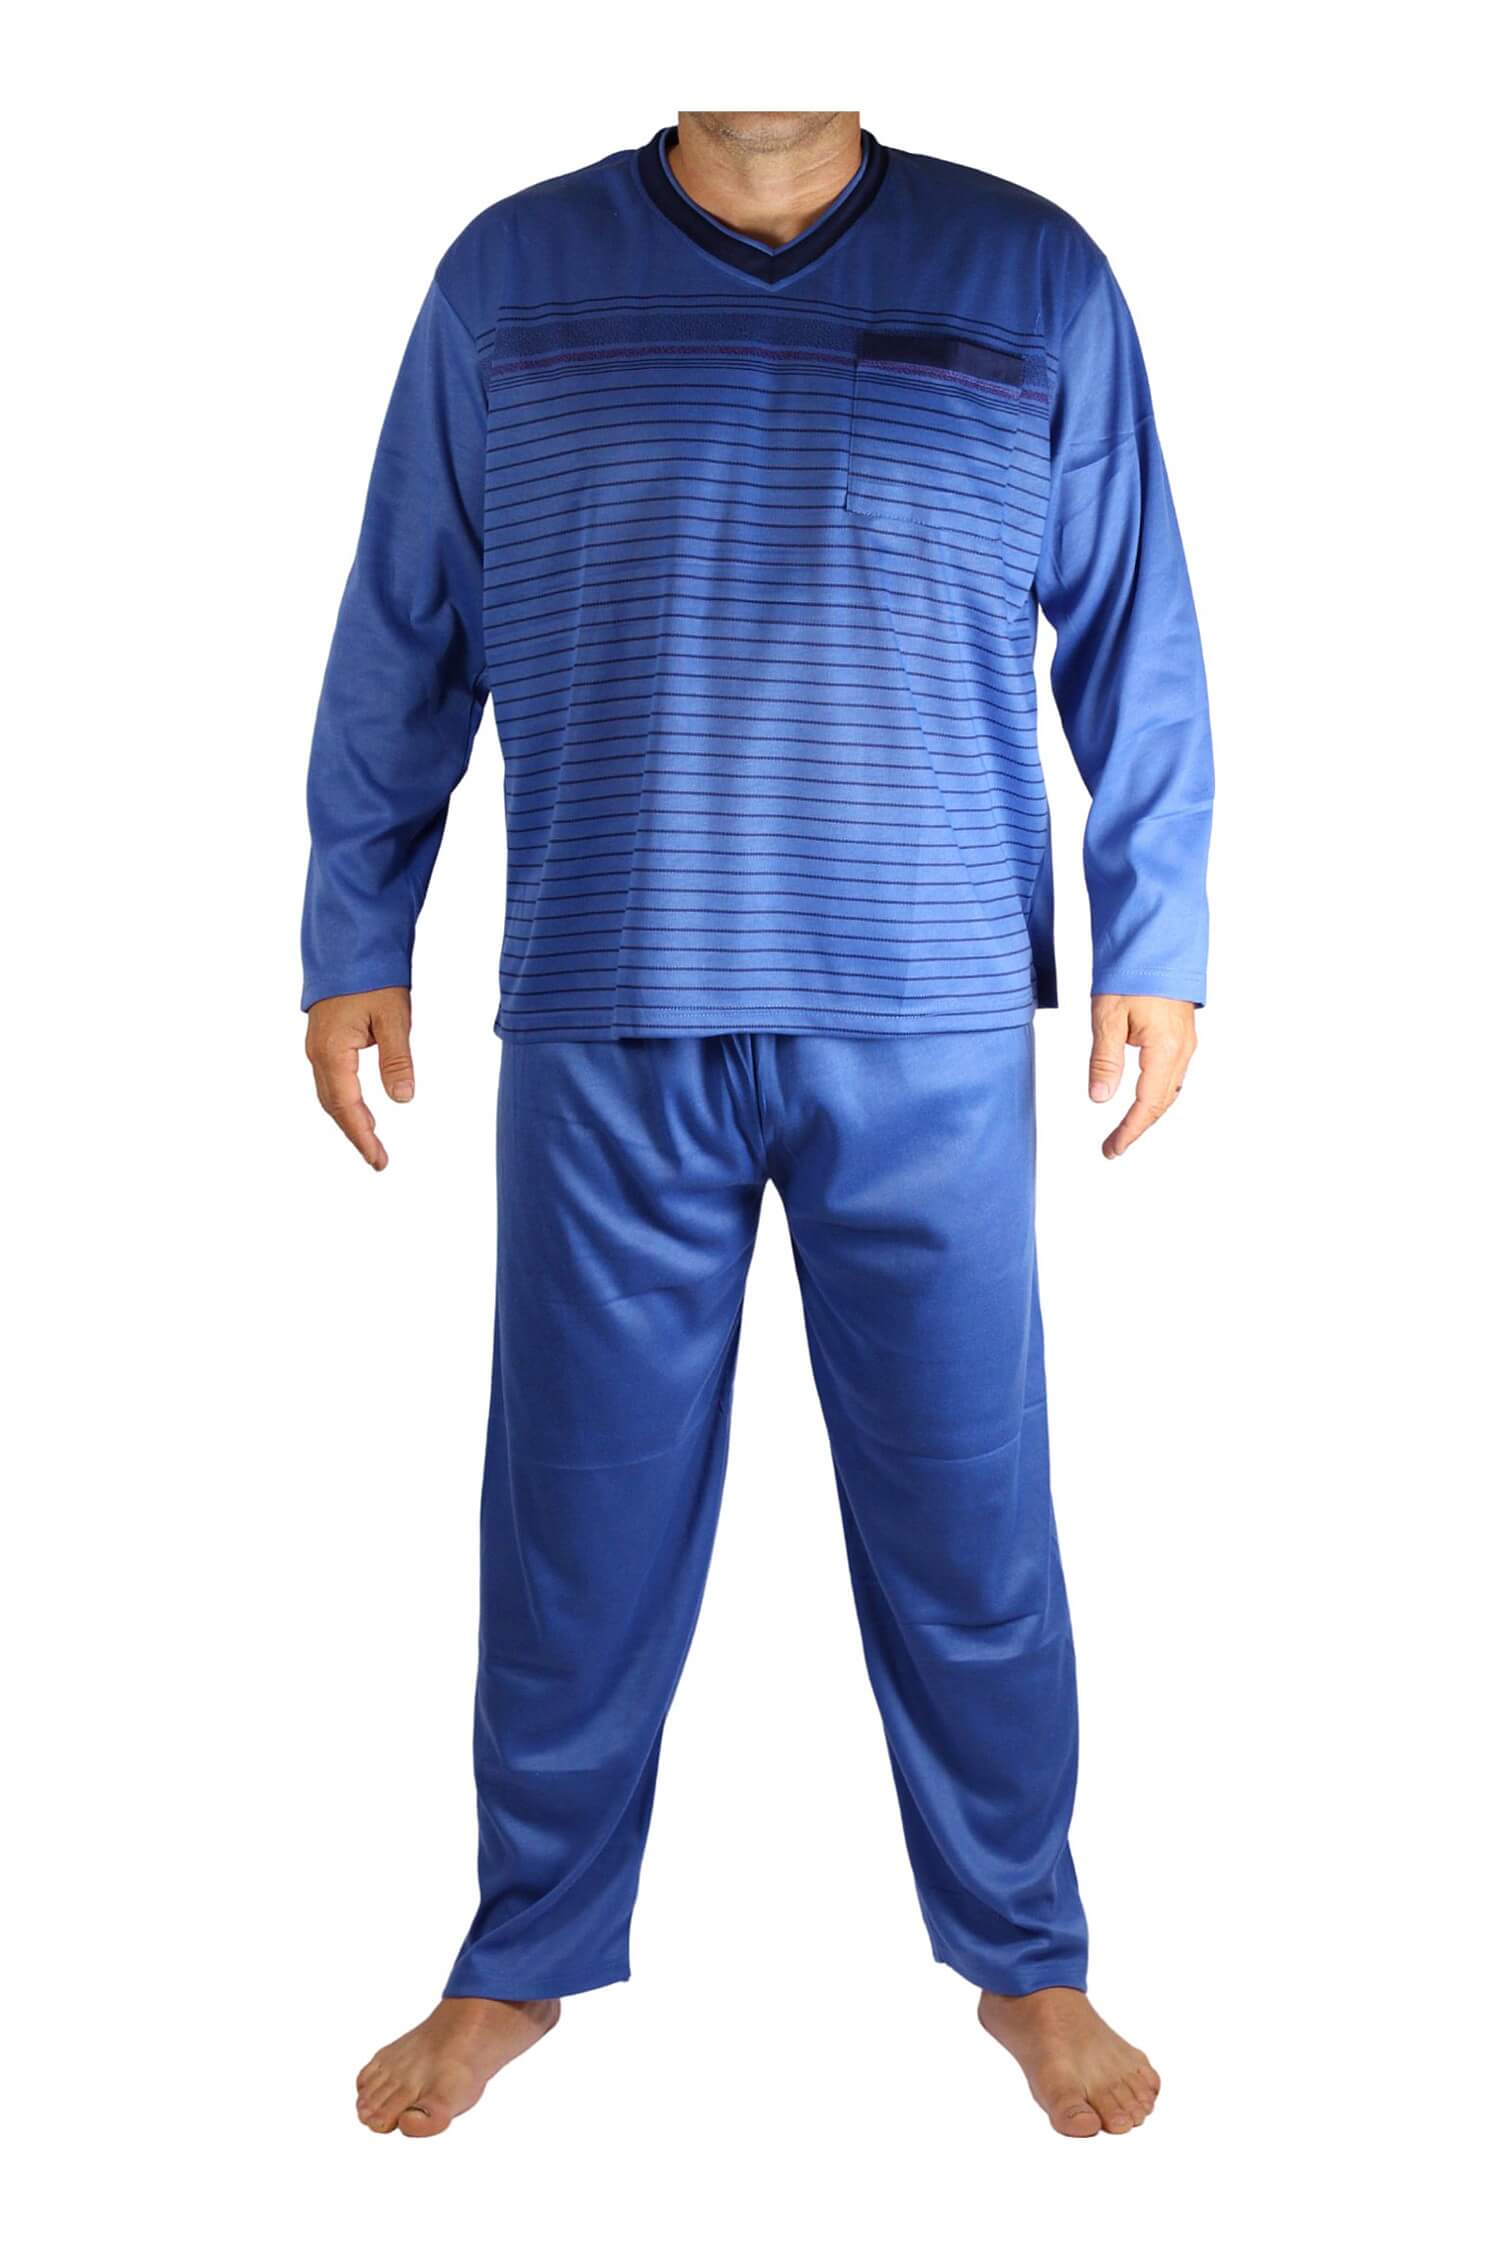 Standa pyžamo pánské dlouhé V2401 XXL tmavě modrá